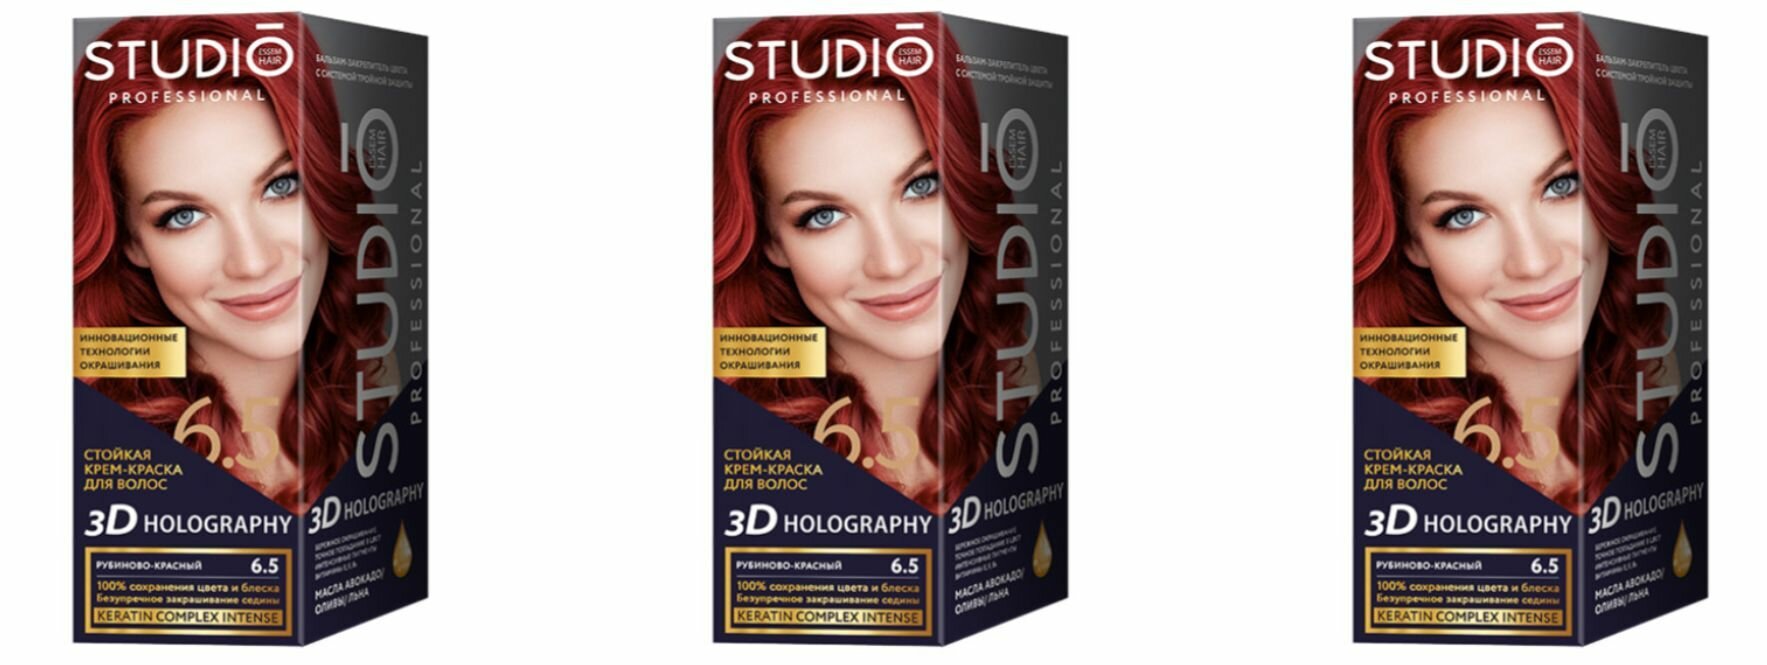 Studio Professional Essem Hair Краска для волос 3D Holography тон 6.5 Рубиново-красный, 115 мл, 3 штуки